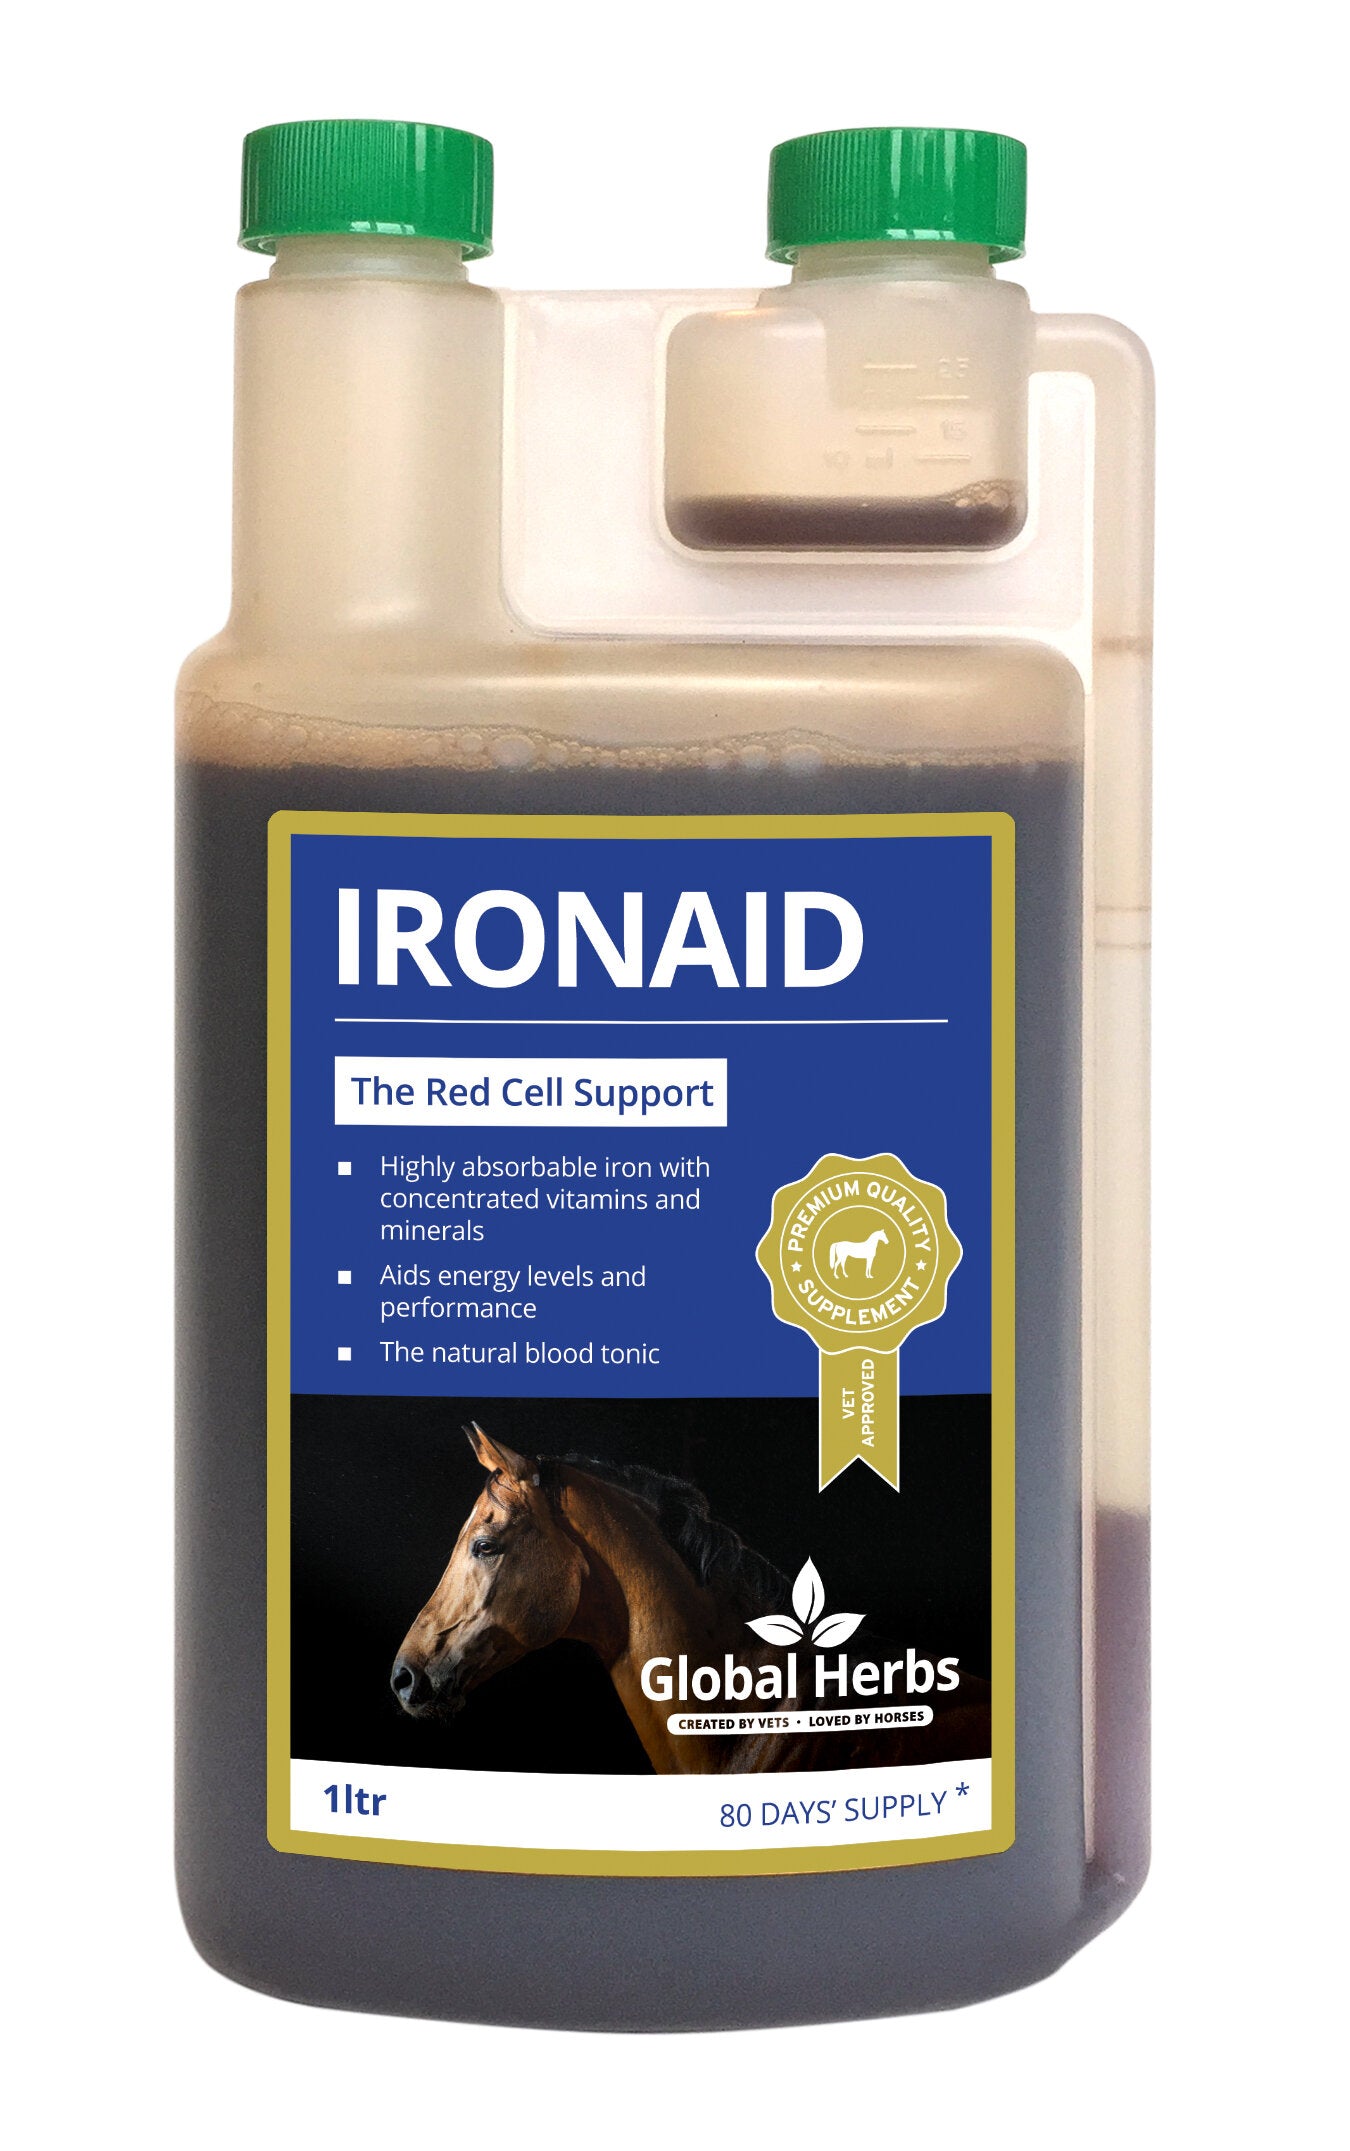 Global Herbs IronAid